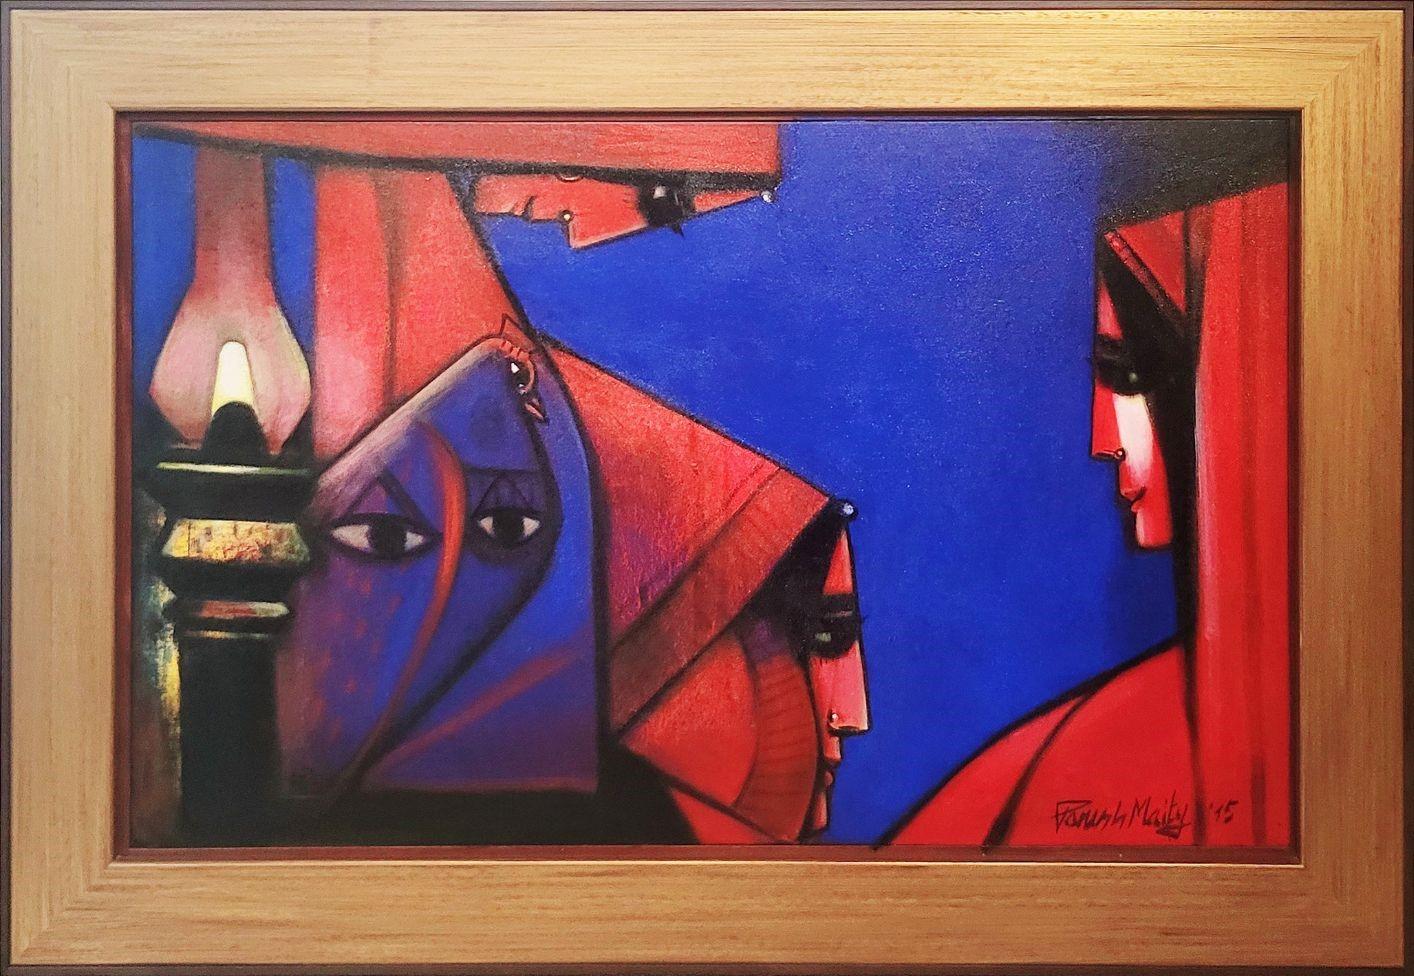 Paresh Maity - Triangle éternel
30 x 48 pouces ( Taille non remaniée ) 
58,1 x 40,1 pouces (  Encadré Taille )
Huile sur toile
2015

Paresh Maity est l'un des artistes contemporains indiens les plus appréciés. Ses œuvres font partie de diverses